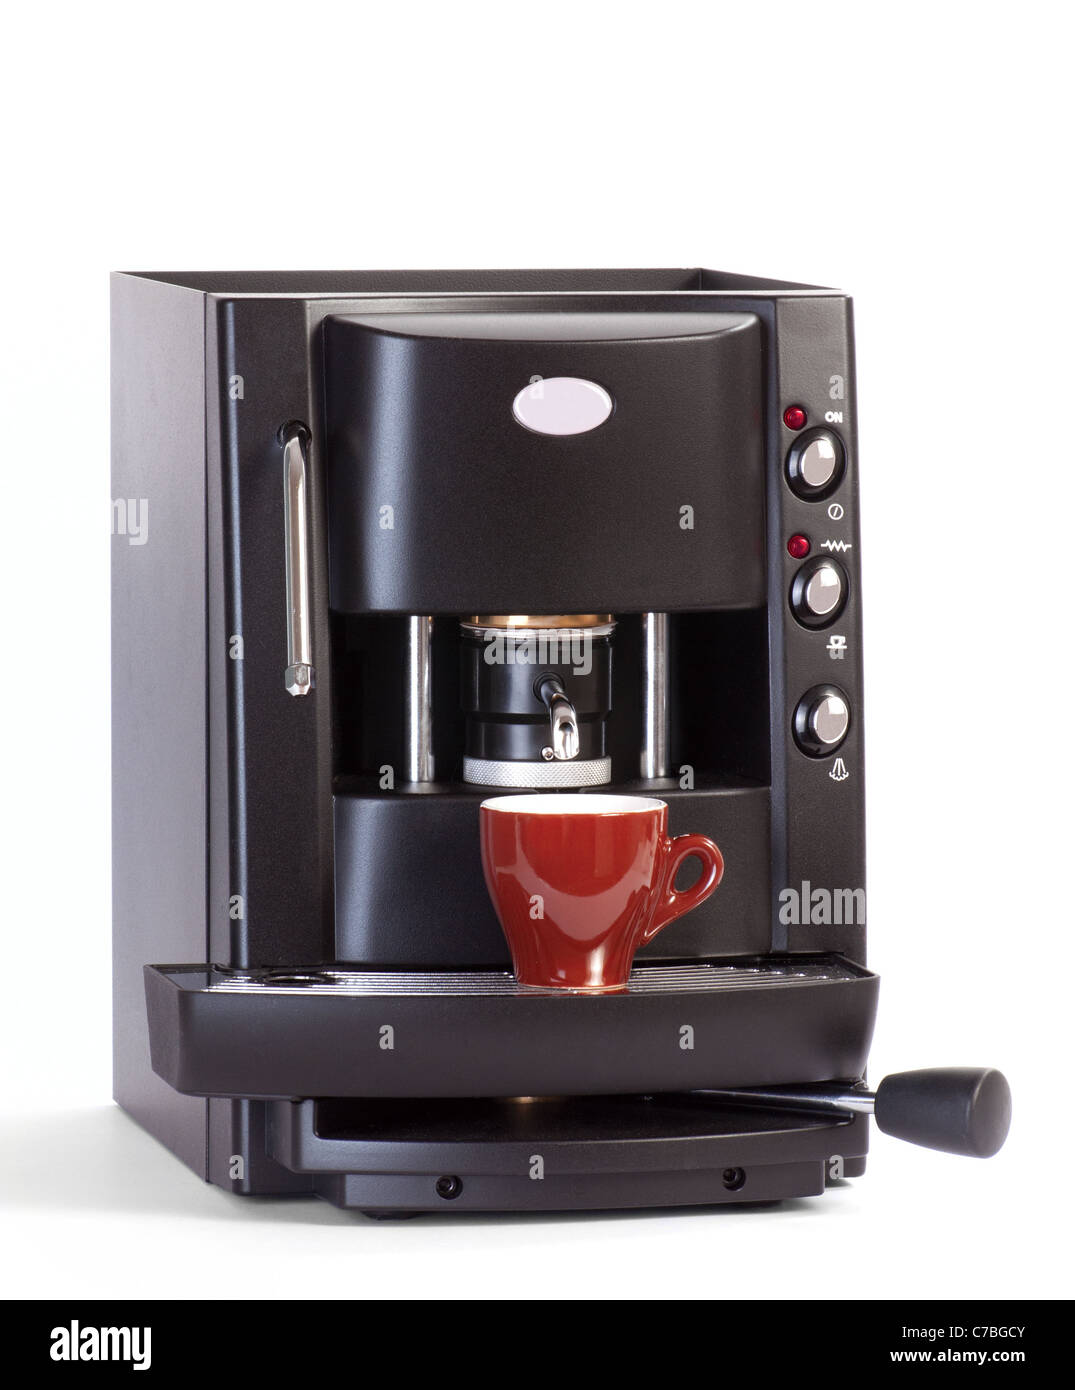 Macchina caffè espresso a cialde. Espresso machine Stock Photo - Alamy